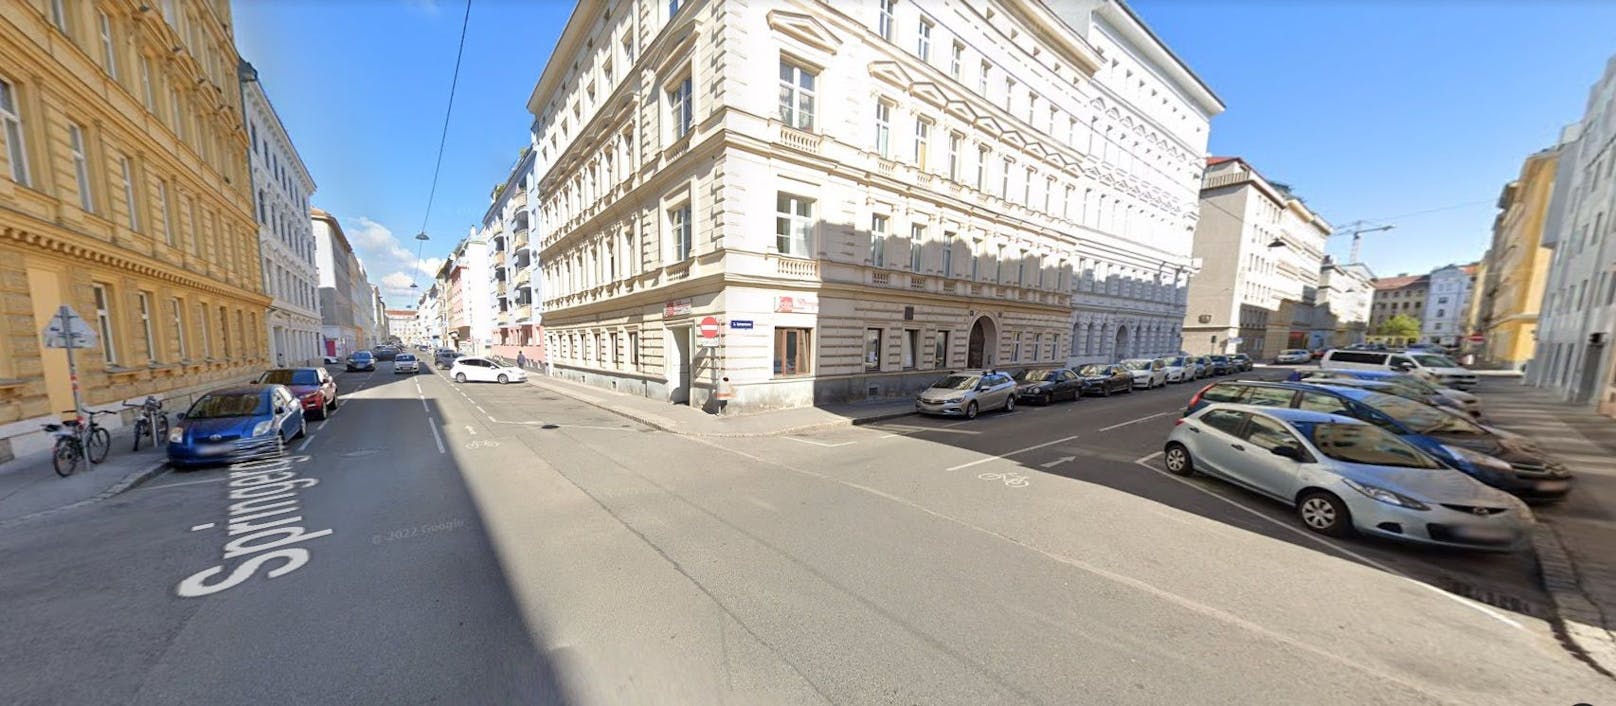 In Wien Leopoldstadt werden jetzt Parkplätze liquidiert. 